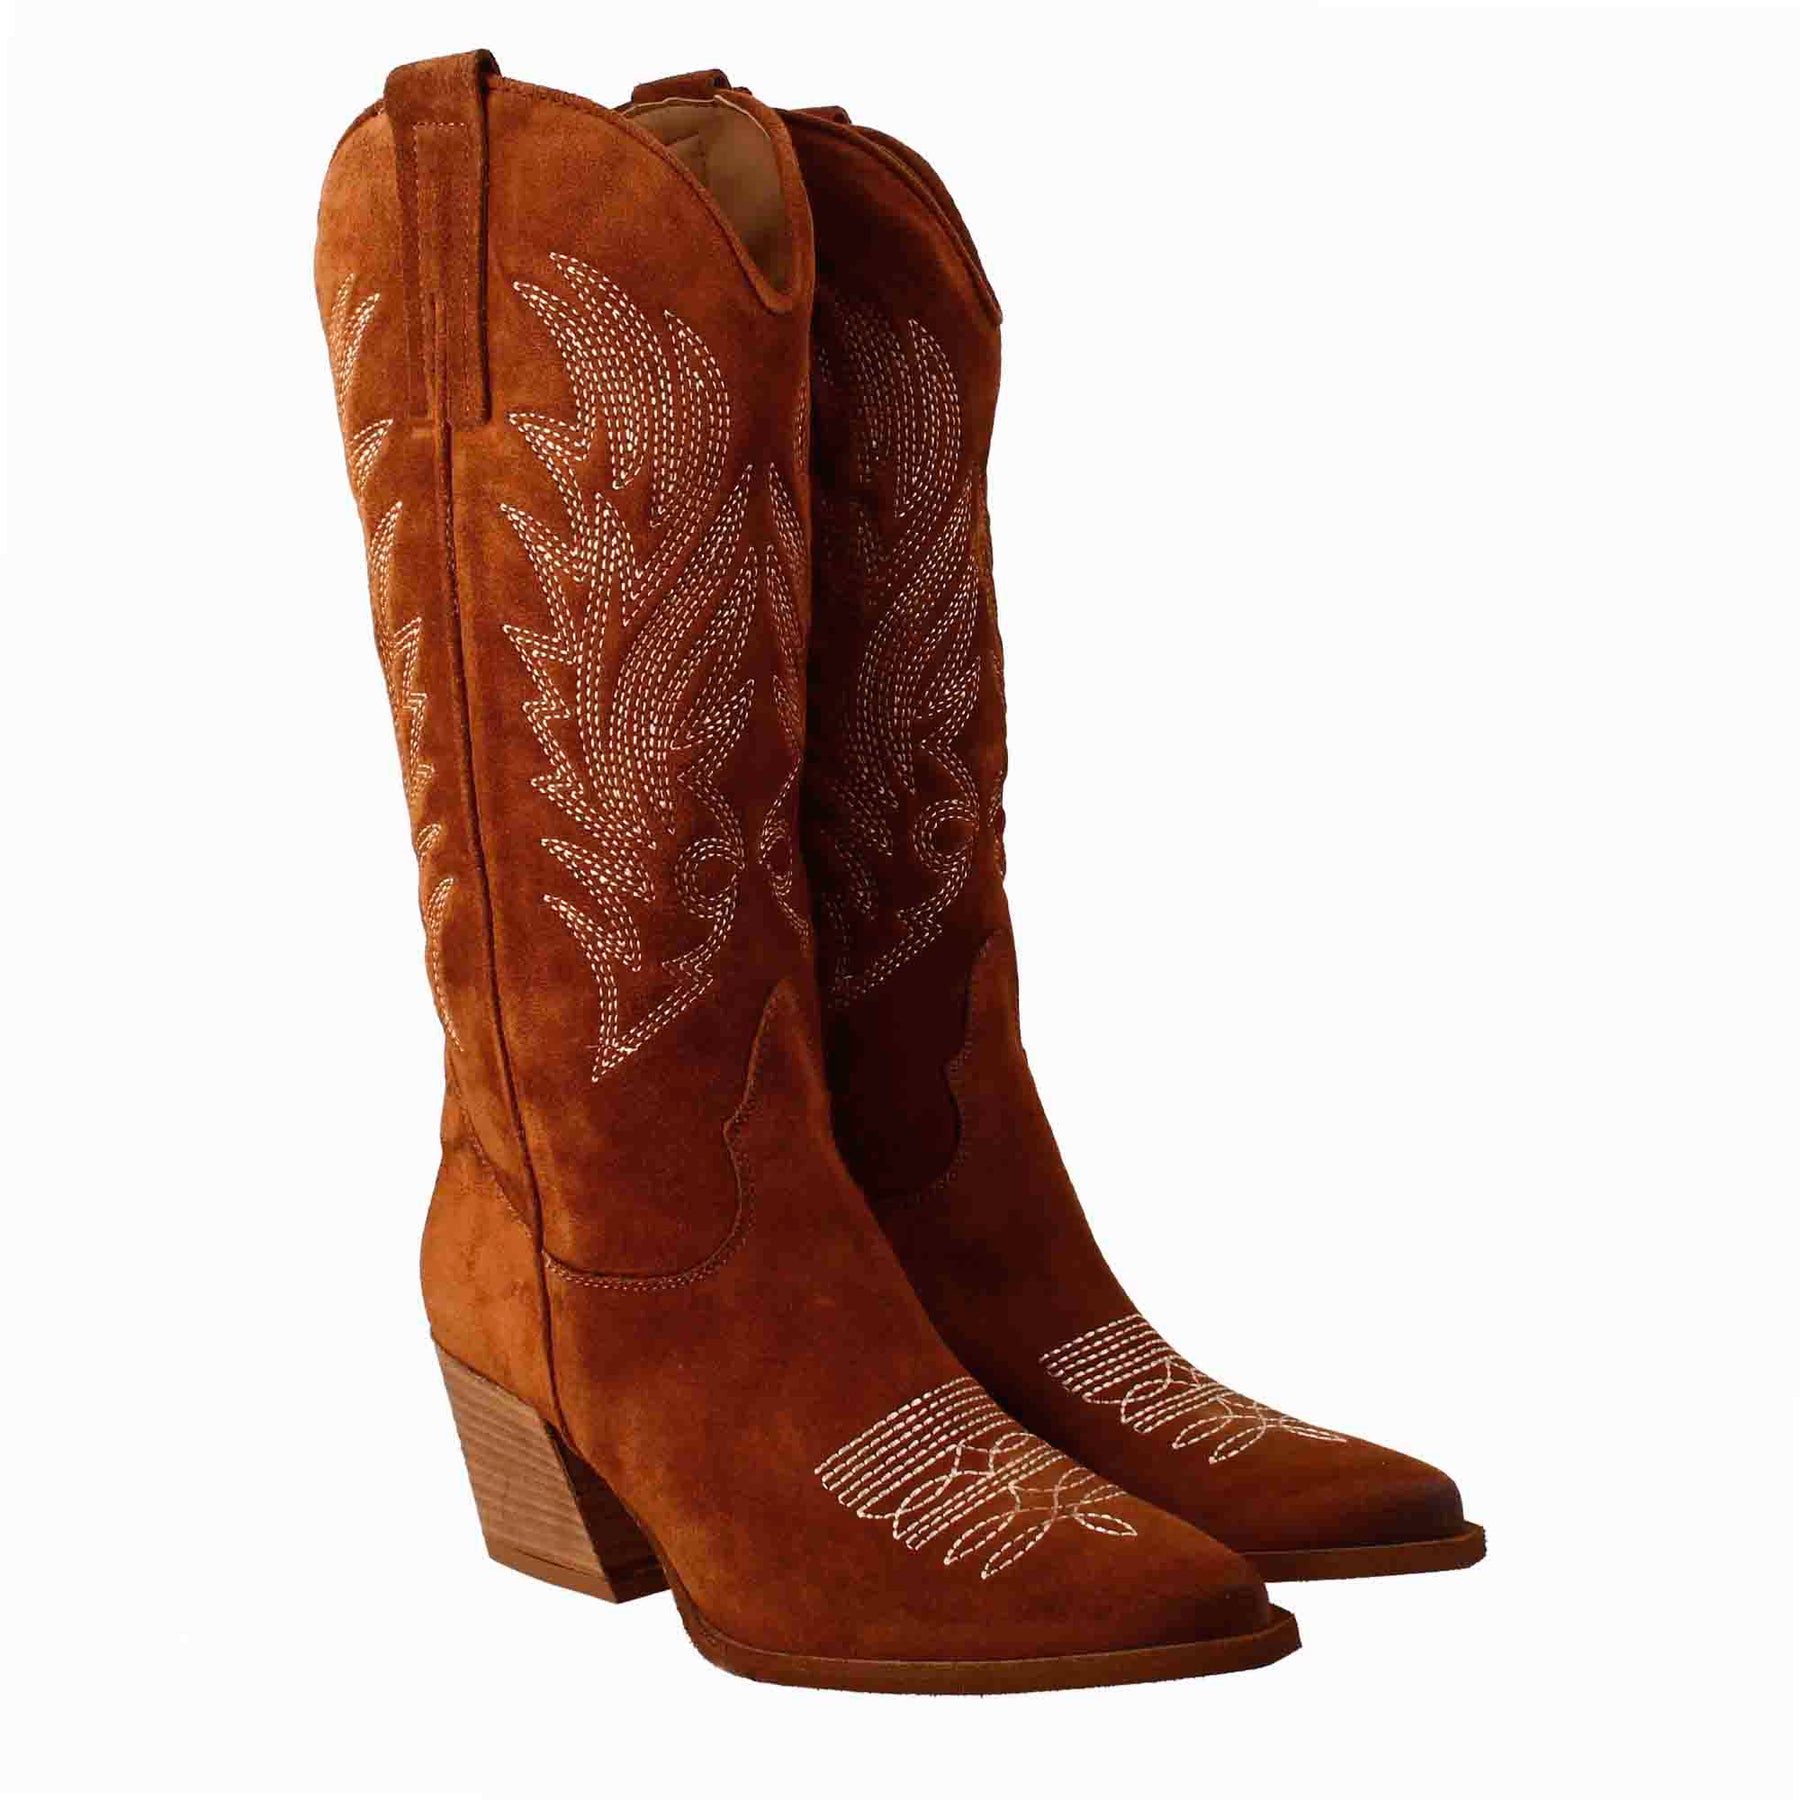 Bottes texanes moyennes pour femme en daim marron avec broderie.